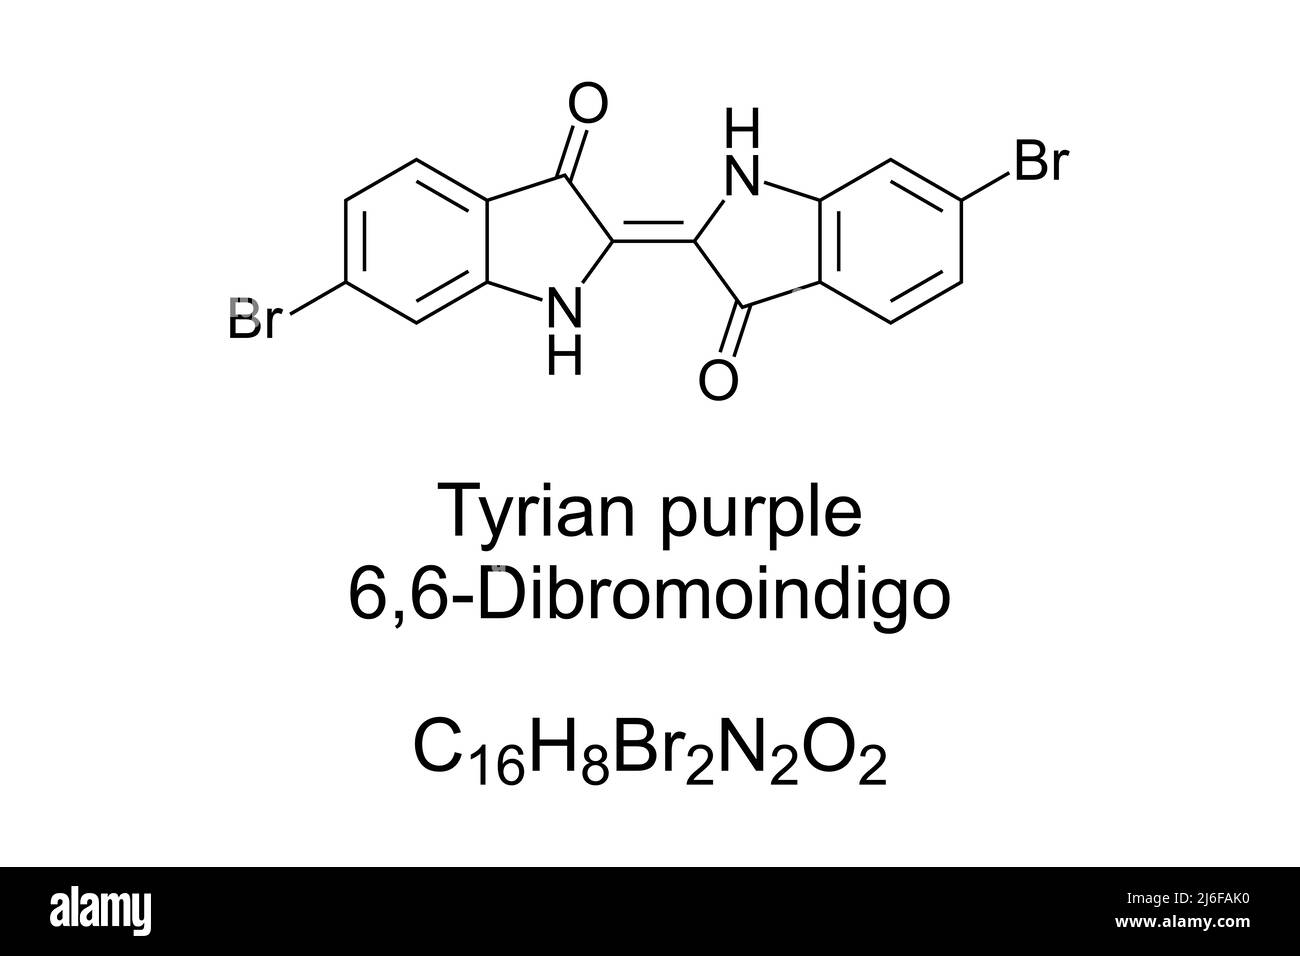 Tyrian Purpur, 6,6-Dibromoindigo, chemische Formel und Struktur. Auch phönizisches Rot, königliches Purpur oder imperiales Farbstoff. Rötlich-violetter natürlicher Farbstoff. Stockfoto